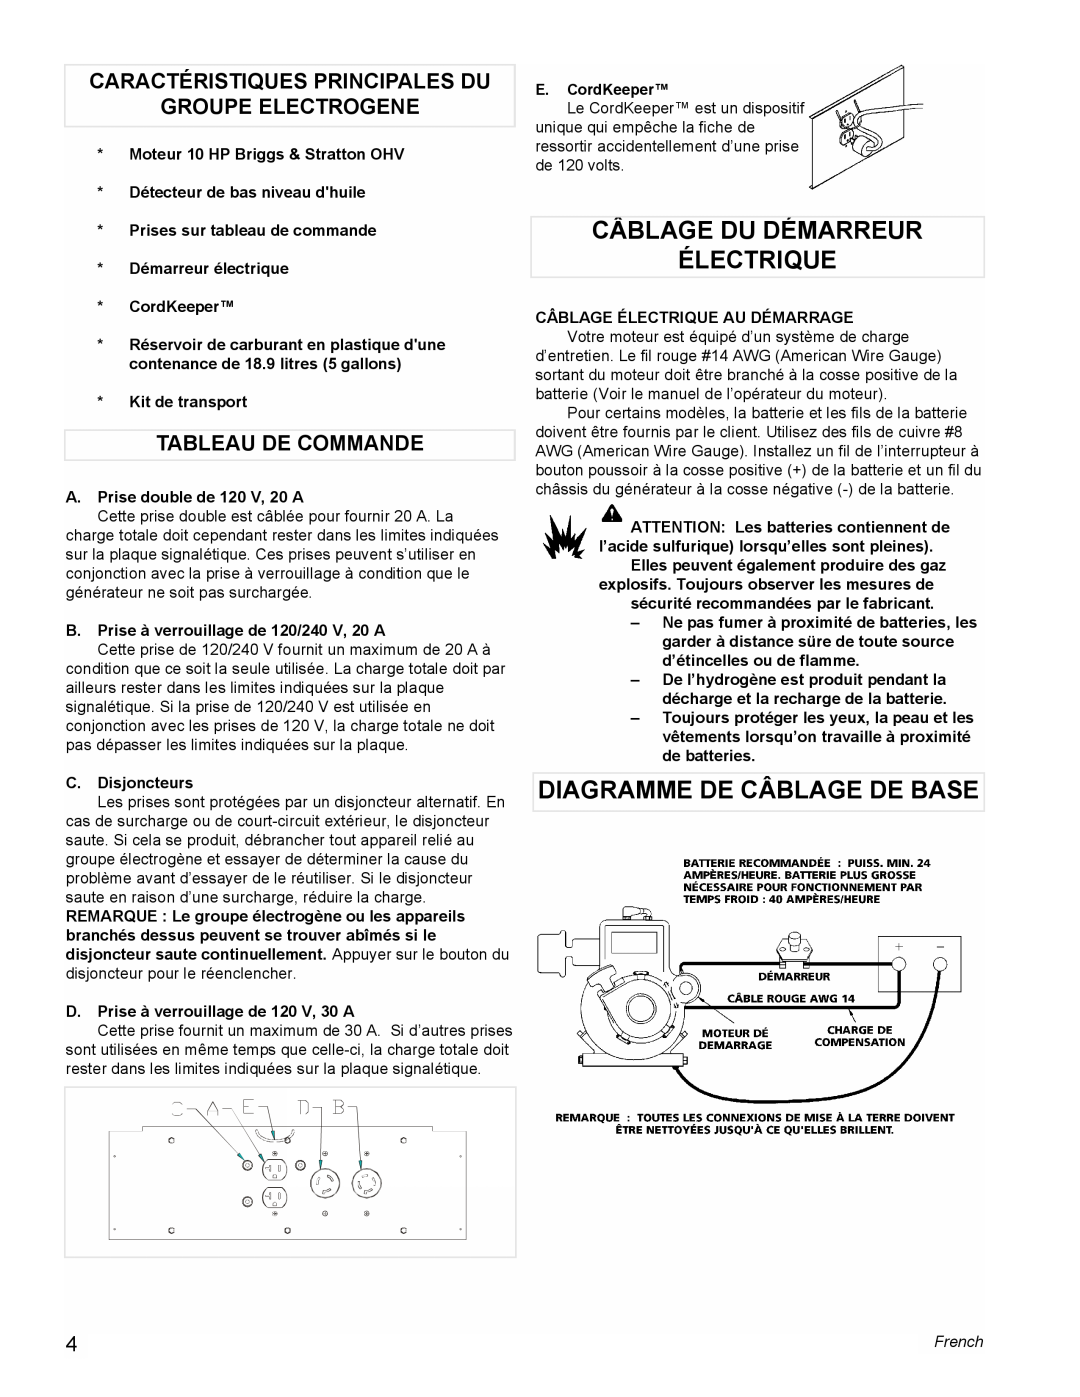 Powermate PMA505622 manual Câblage Du Démarreur Électrique, Diagramme De Câblage De Base, Tableau De Commande, French 